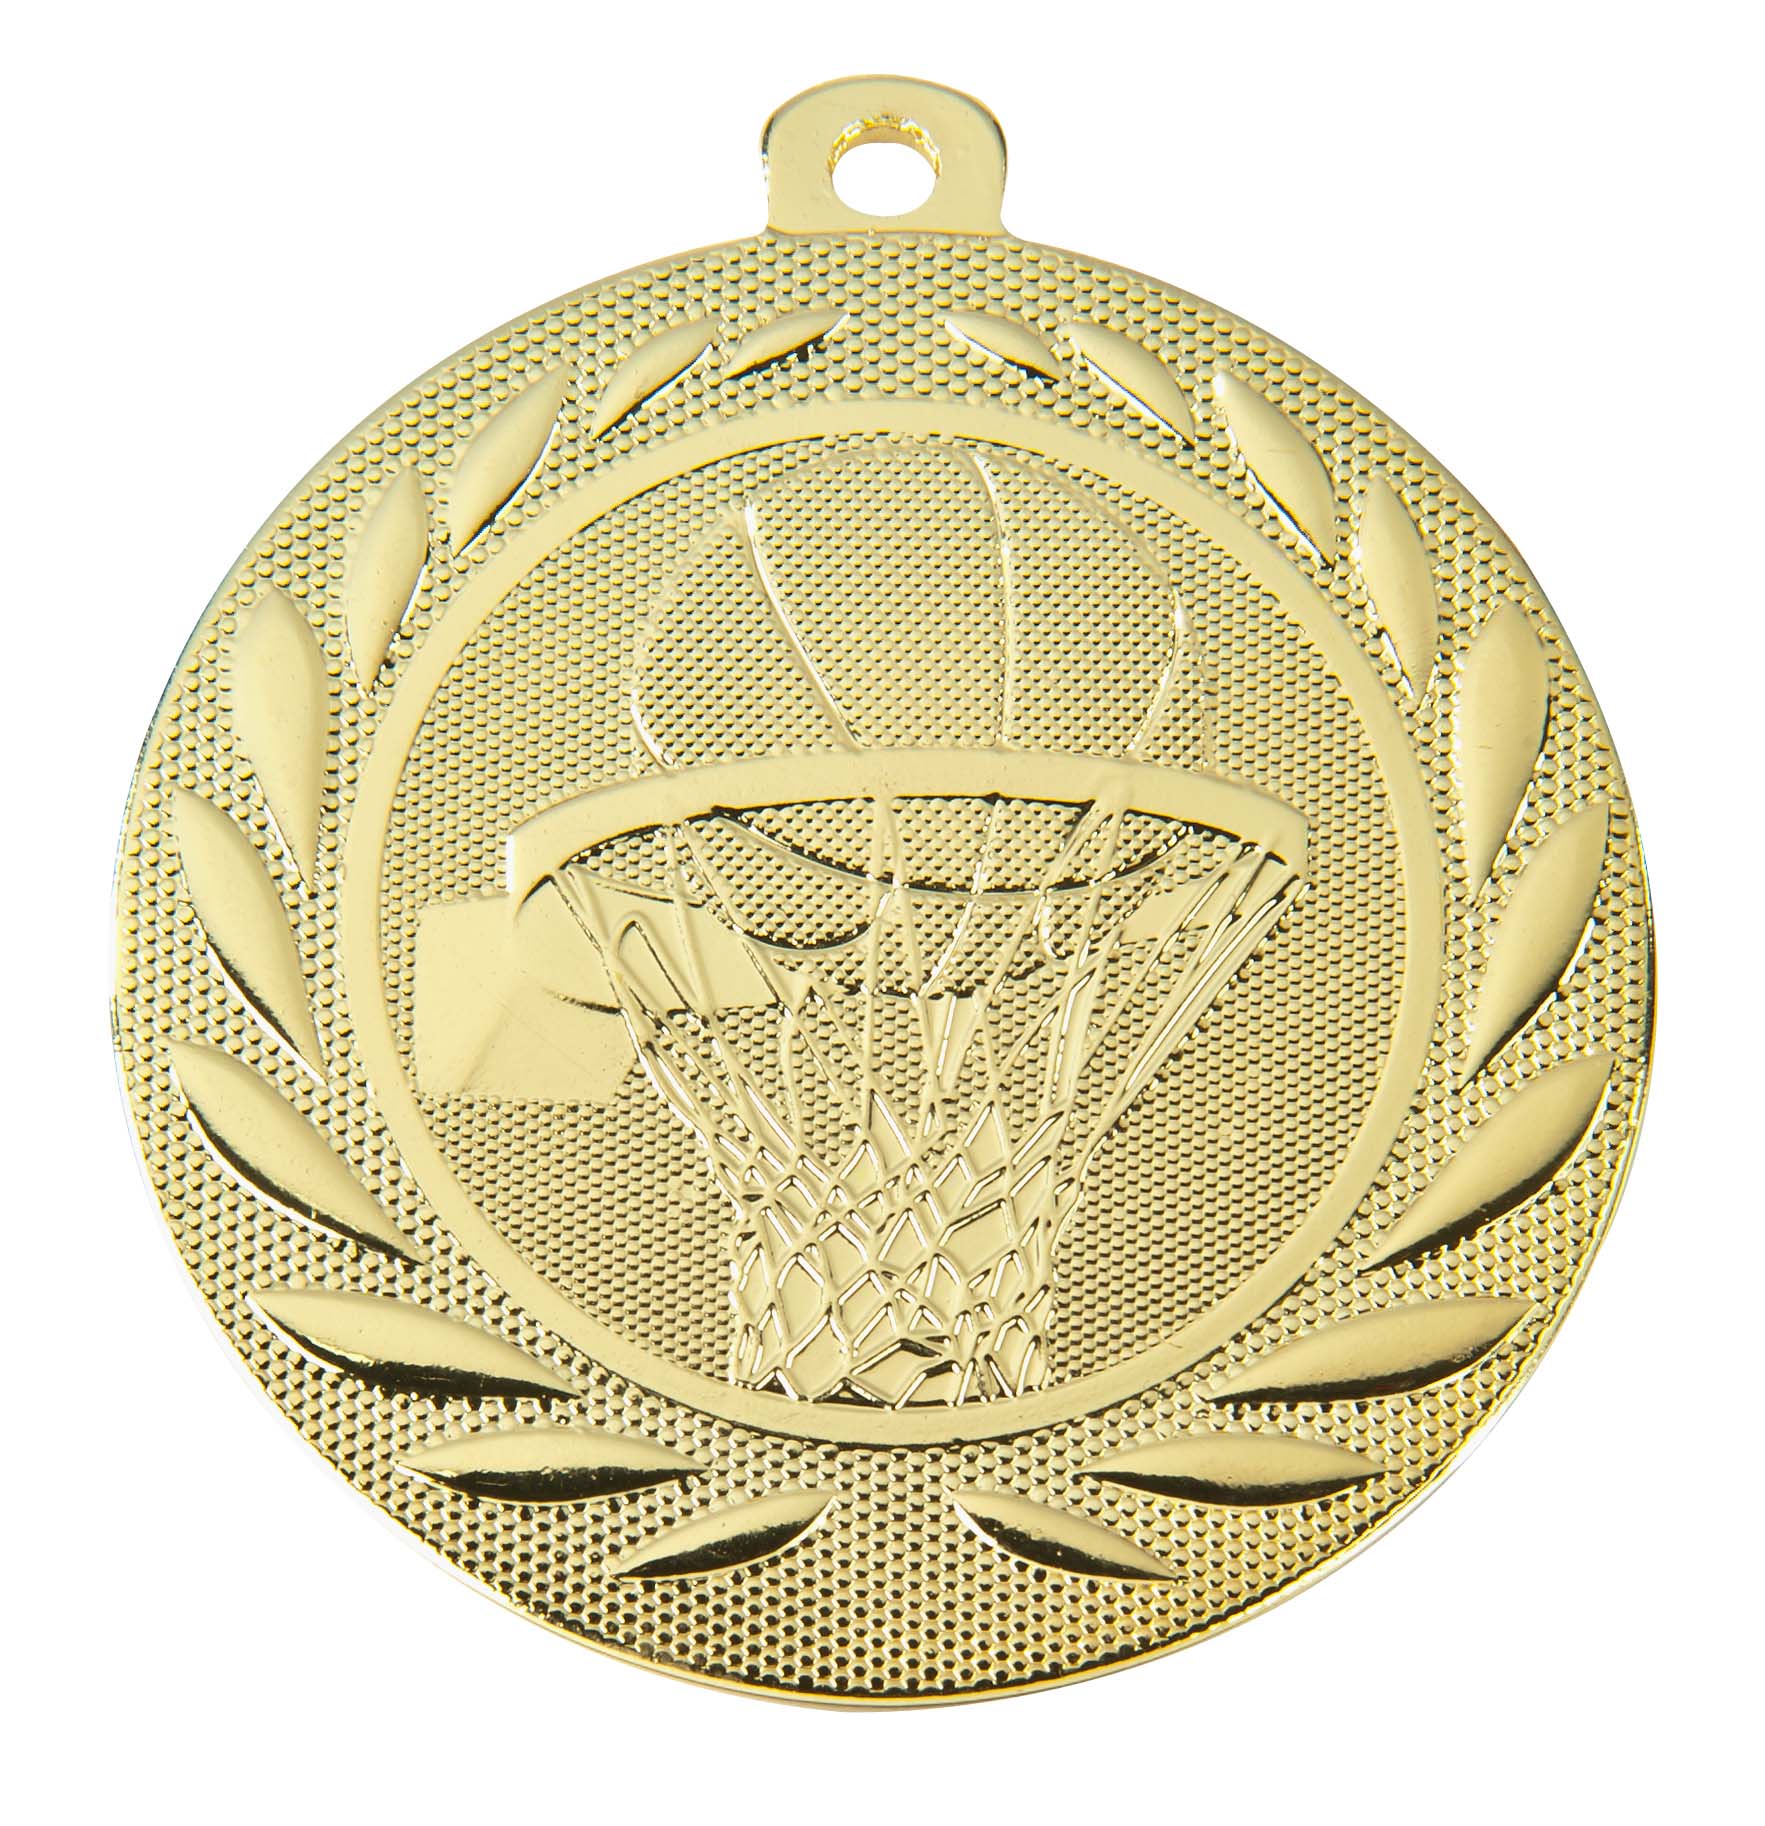 Basketball-Medaille DI5000M inkl. Band und Beschriftung Gold Fertig montiert gegen Aufpreis